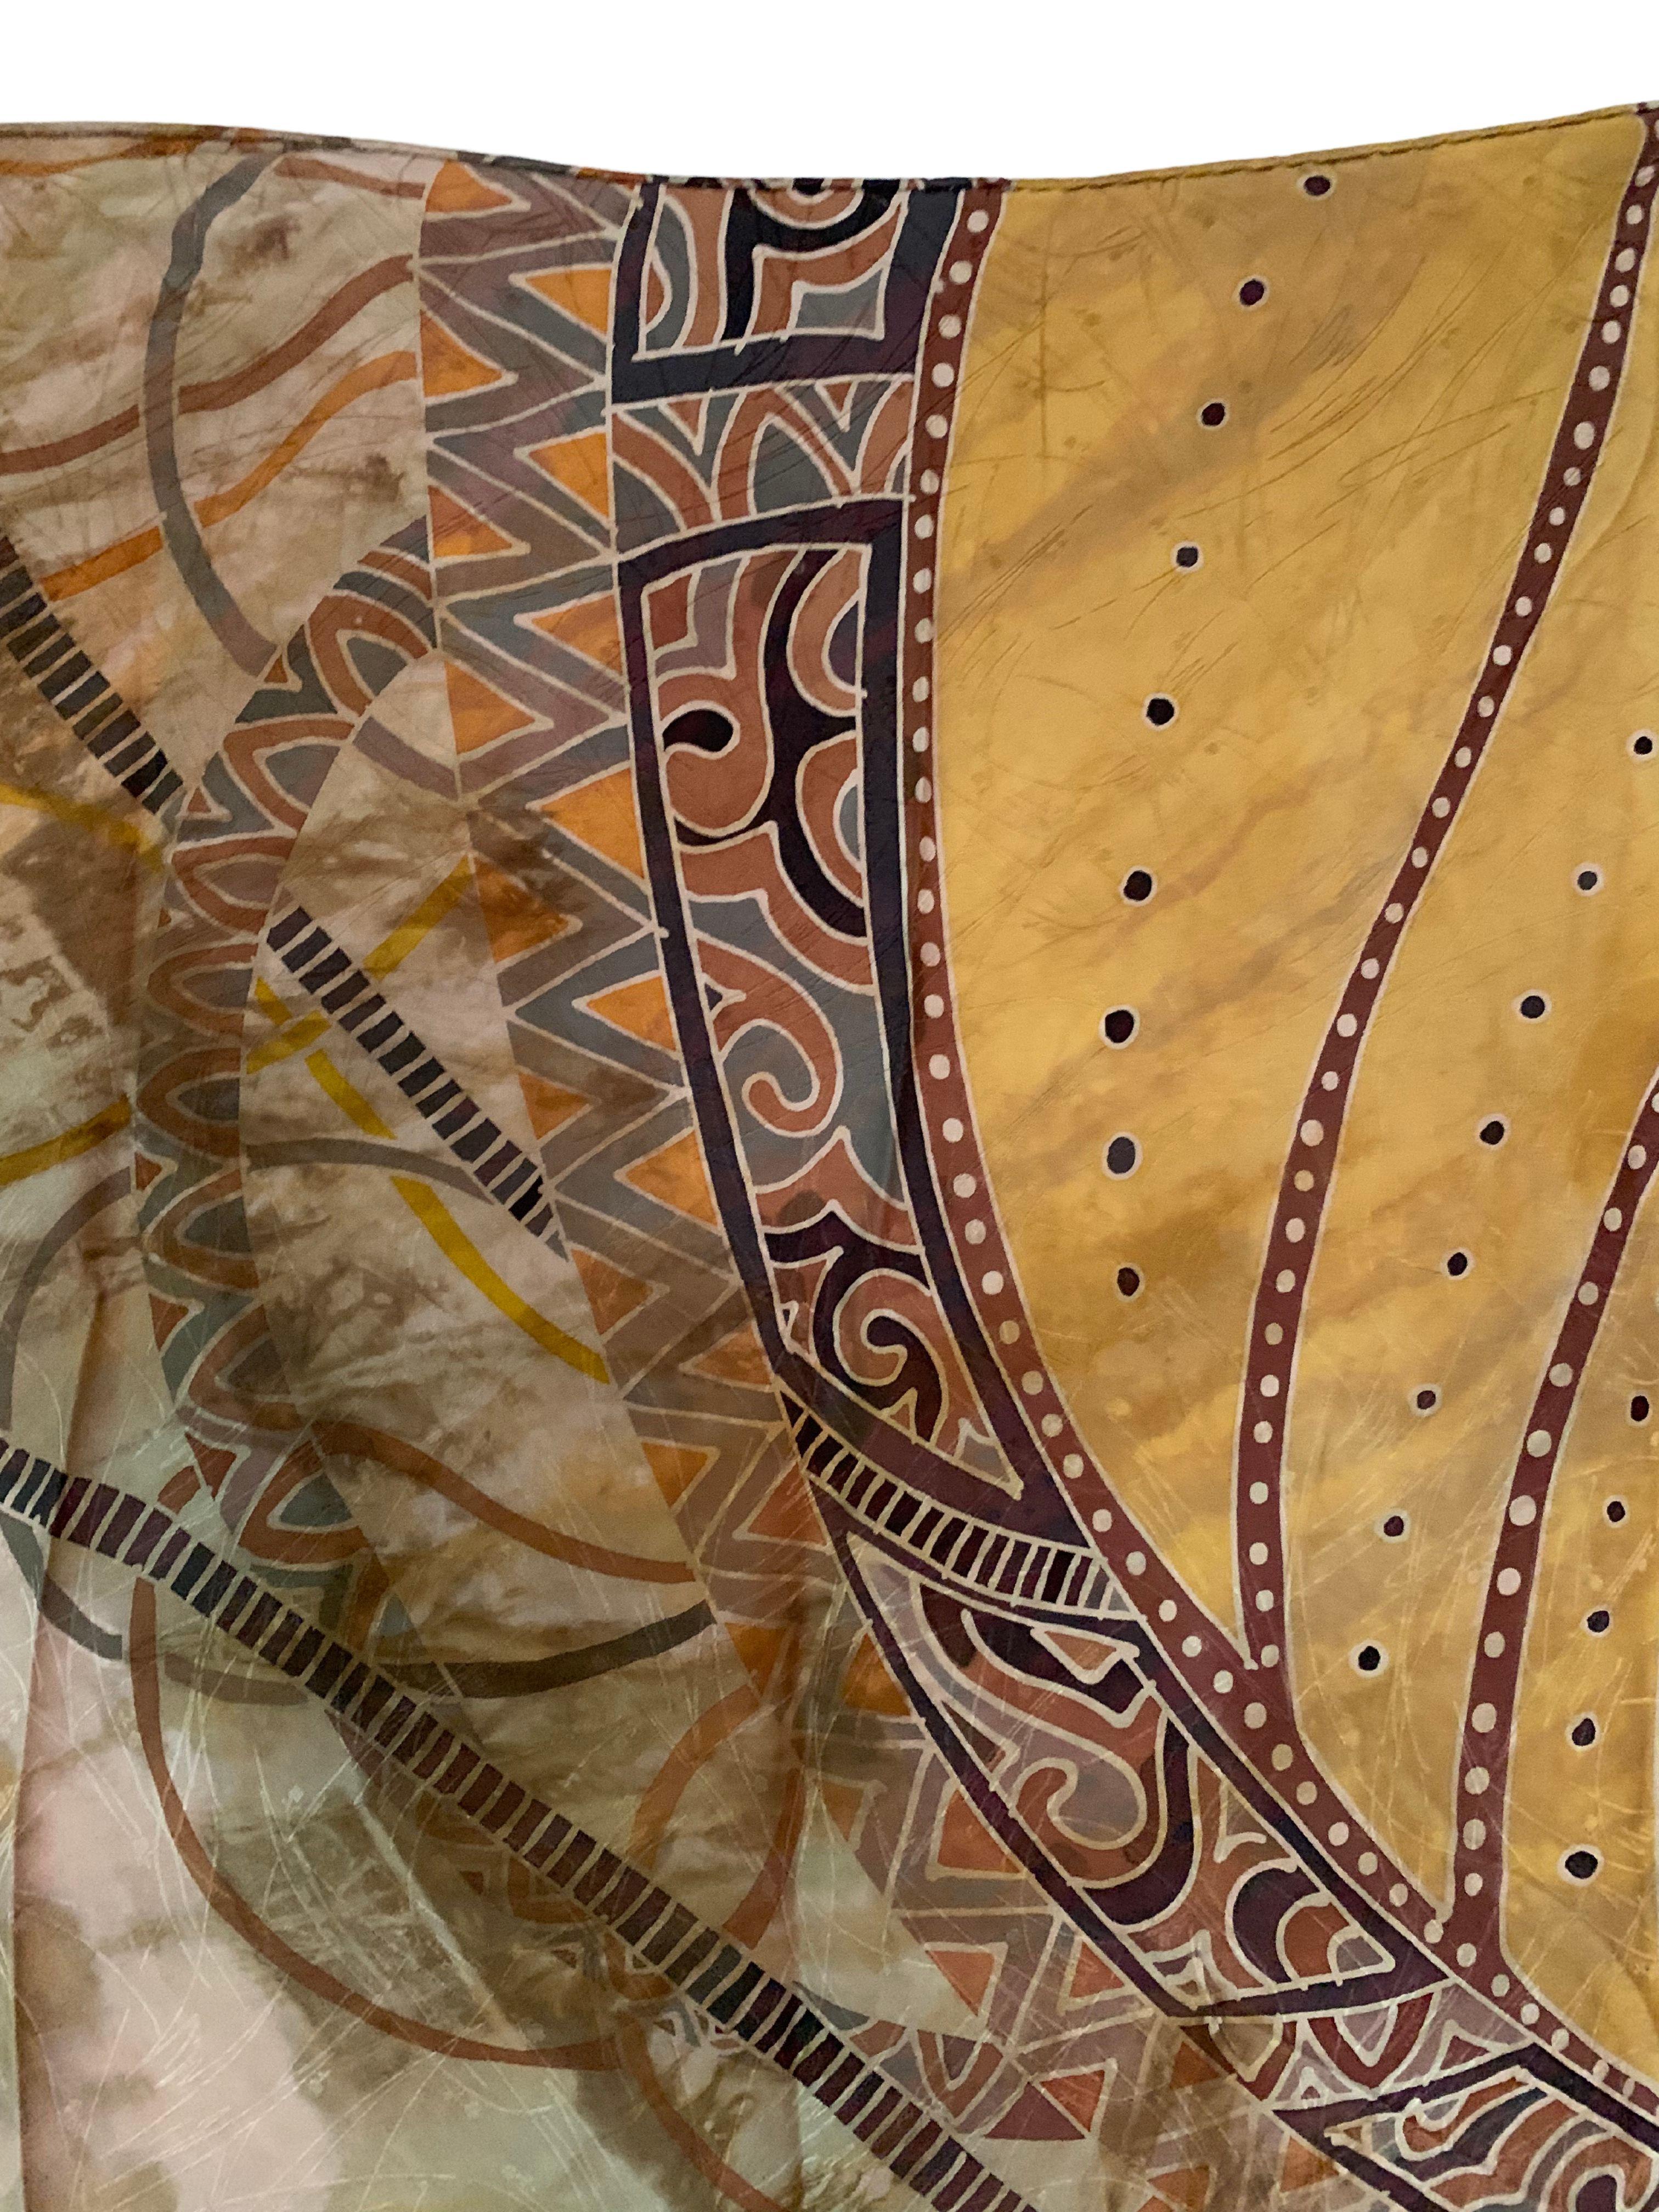 Un merveilleux textile de soie Shantung fabriqué à la main en Malaisie, avec des détails et des nuances étonnants. La soie Shantung est un tissu de soie de poids moyen, à armure toile, qui est tissé à partir de fils irréguliers et présente donc une